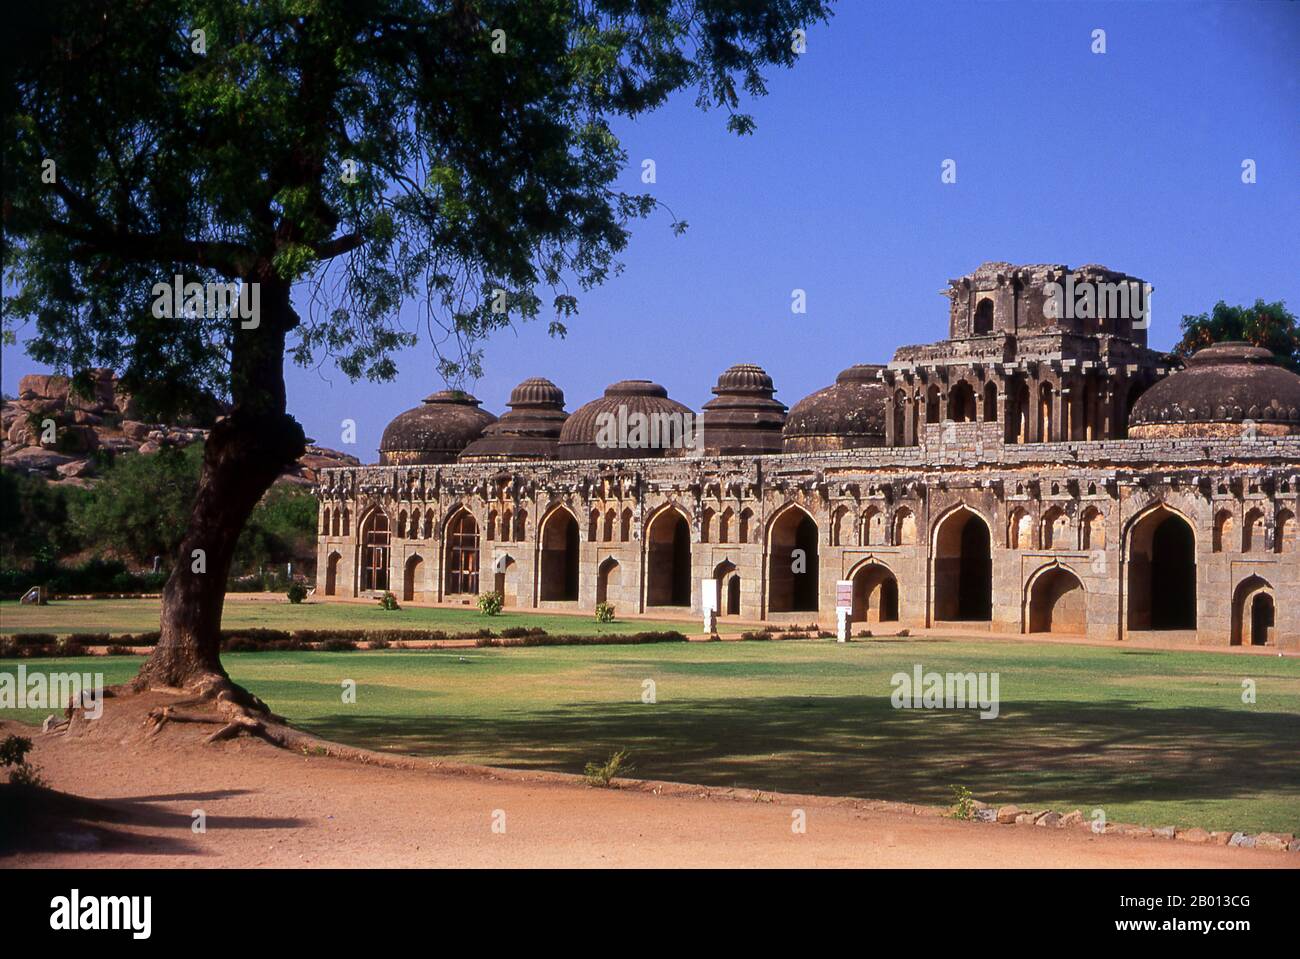 India: Establos de Elefantes, Hampi, Estado de Karnataka. Los establos de elefantes fueron utilizados para albergar los elefantes ceremoniales de la casa real. La estructura muestra una clara influencia islámica en sus cúpulas y puertas arqueadas. Hampi es un pueblo en el estado de Karnataka. Se encuentra dentro de las ruinas de Vijayanagara, la antigua capital del Imperio Vijayanagara. Antes de la ciudad de Vijayanagara, sigue siendo un importante centro religioso, que alberga el Templo de Virupaksha, así como varios otros monumentos pertenecientes a la ciudad vieja. Foto de stock